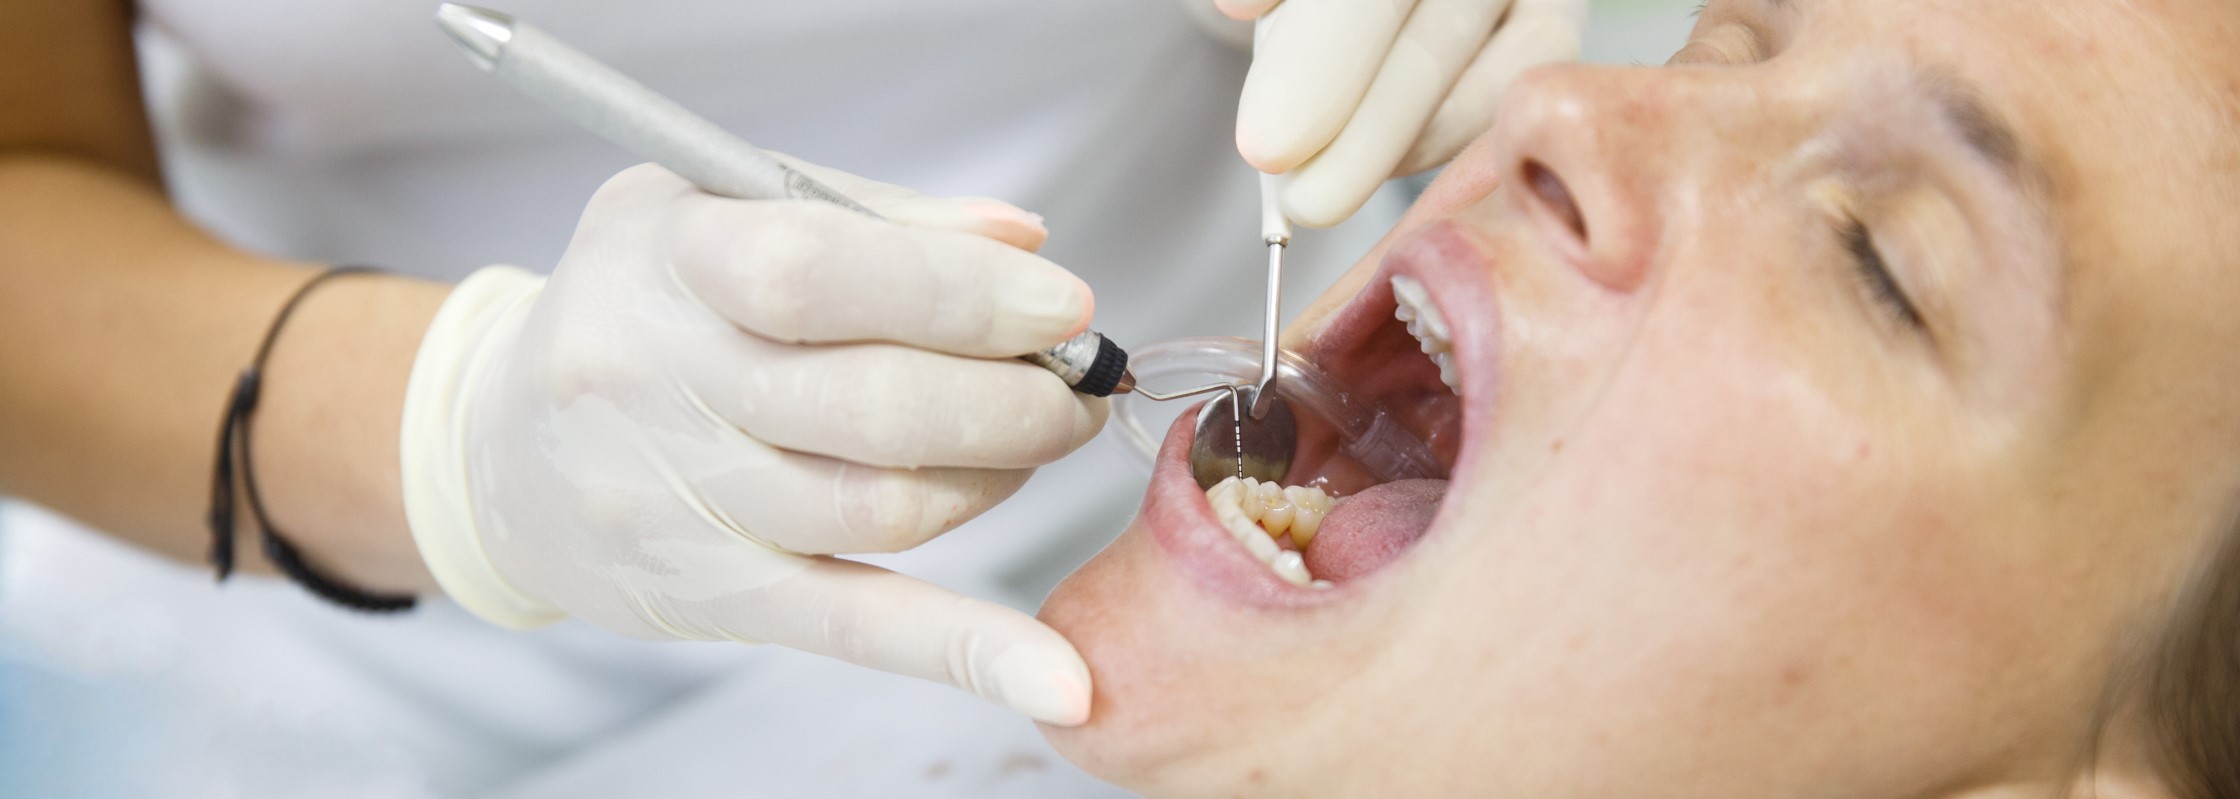 Zahnstein: So entsteht der gehärtete Zahnbelag